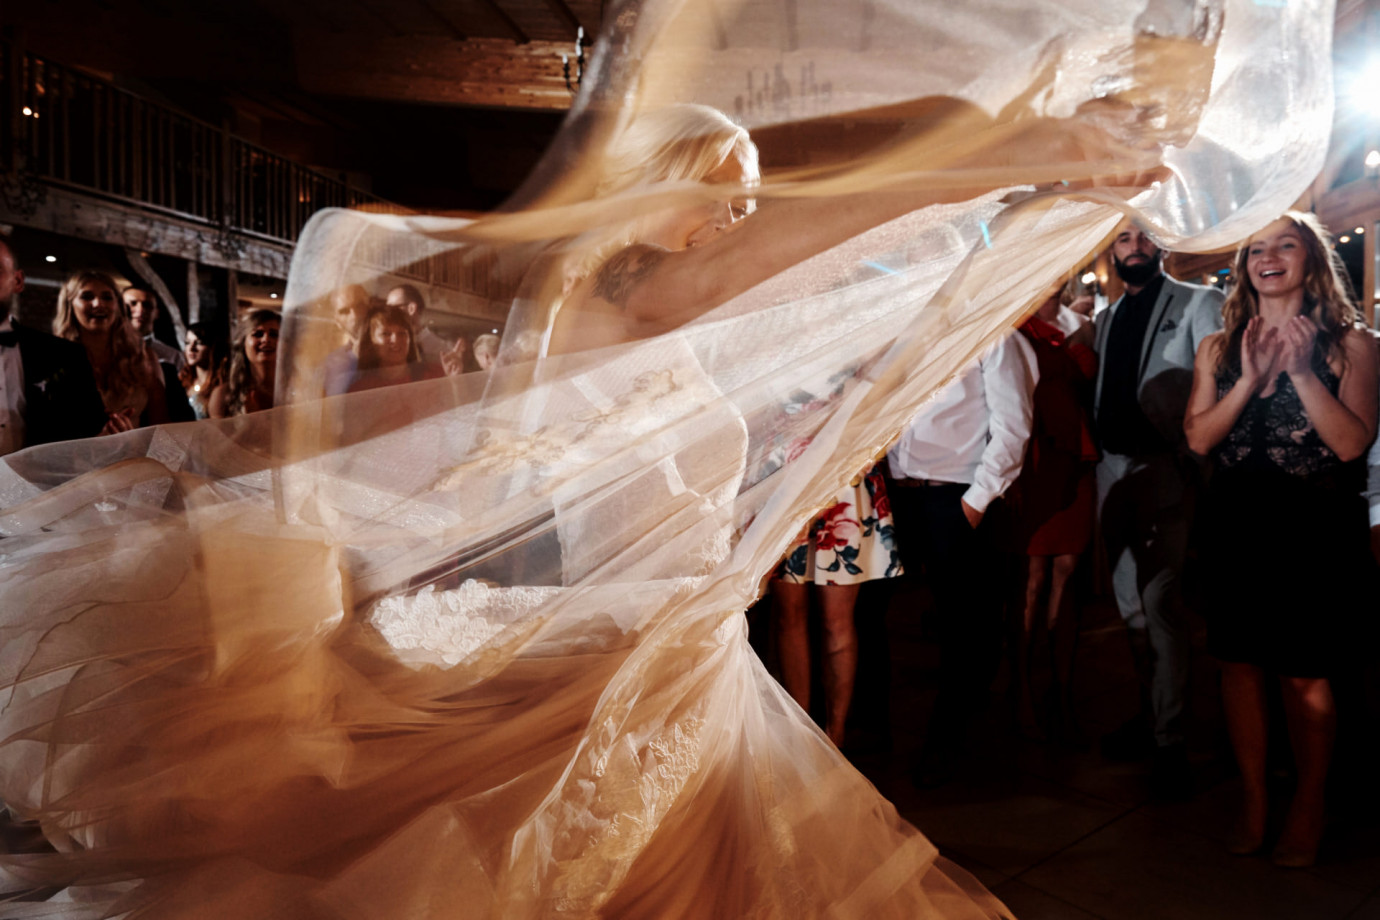 zdjęcia szczecin fotograf fotografia-przemyslaw-bialek portfolio zdjecia slubne inspiracje wesele plener slubny sesja slubna